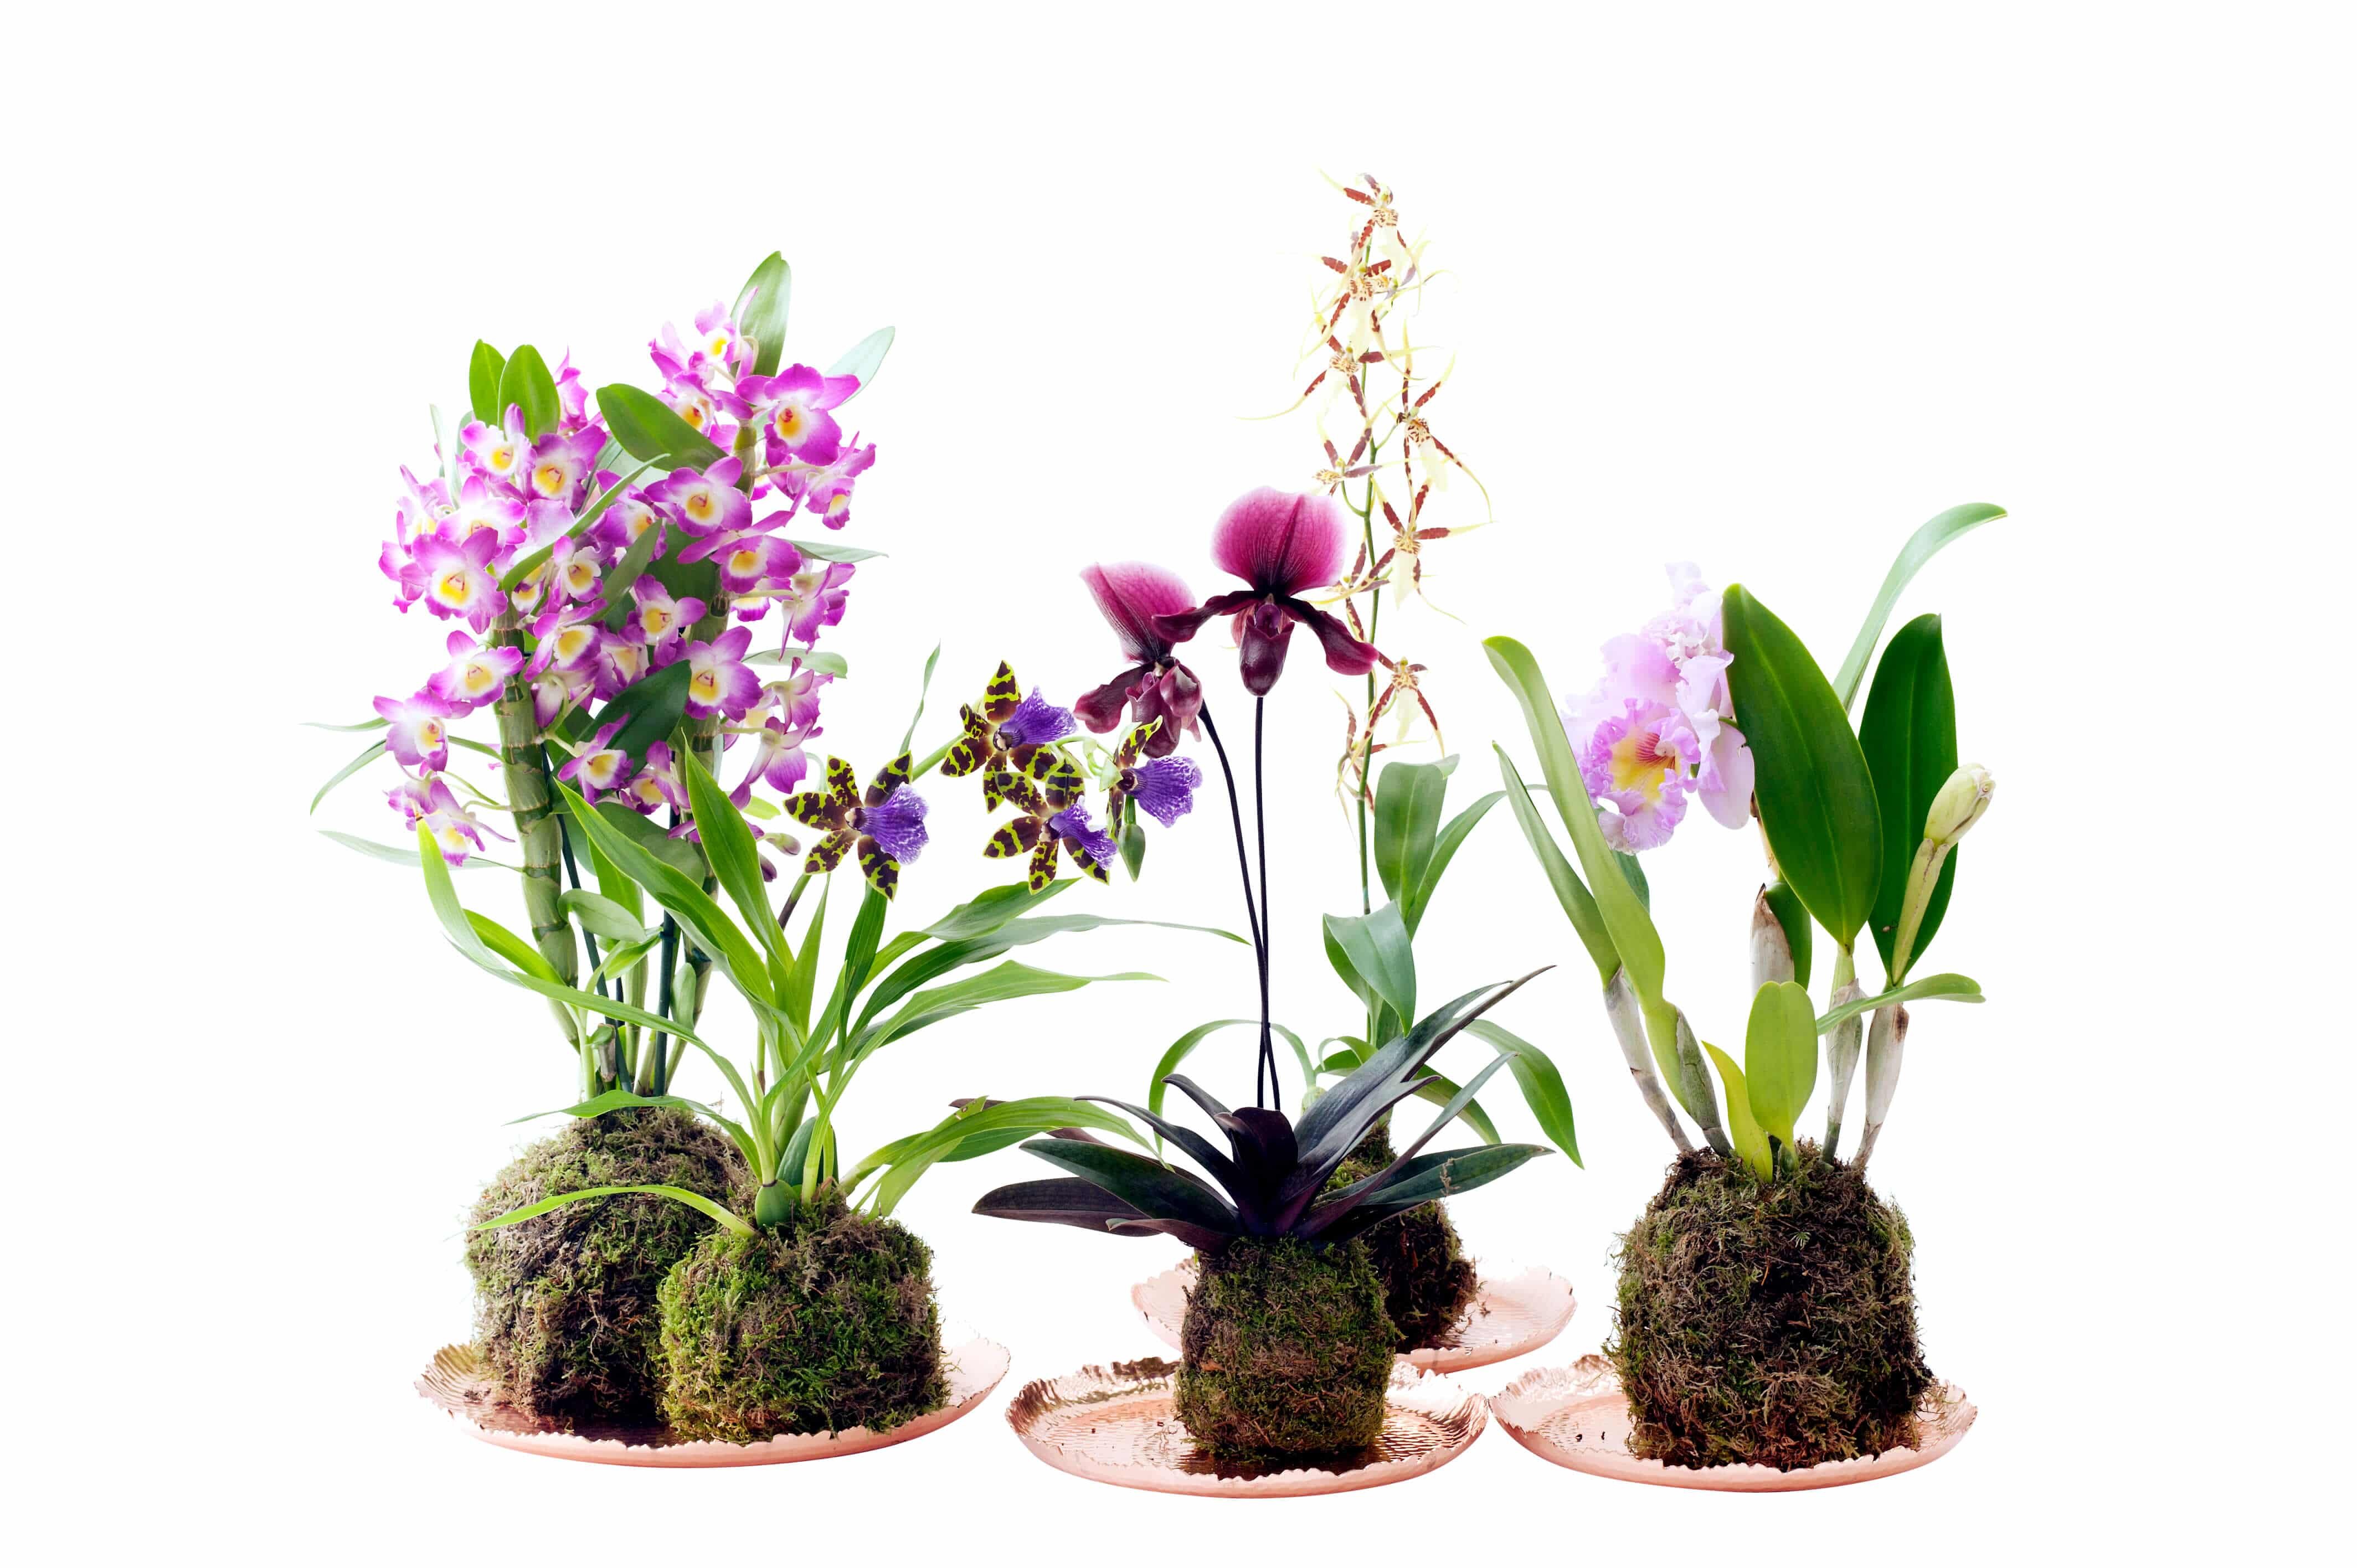 Rempotage des orchidées à pseudobulbles - Les Orchidées de la Belle Etoile